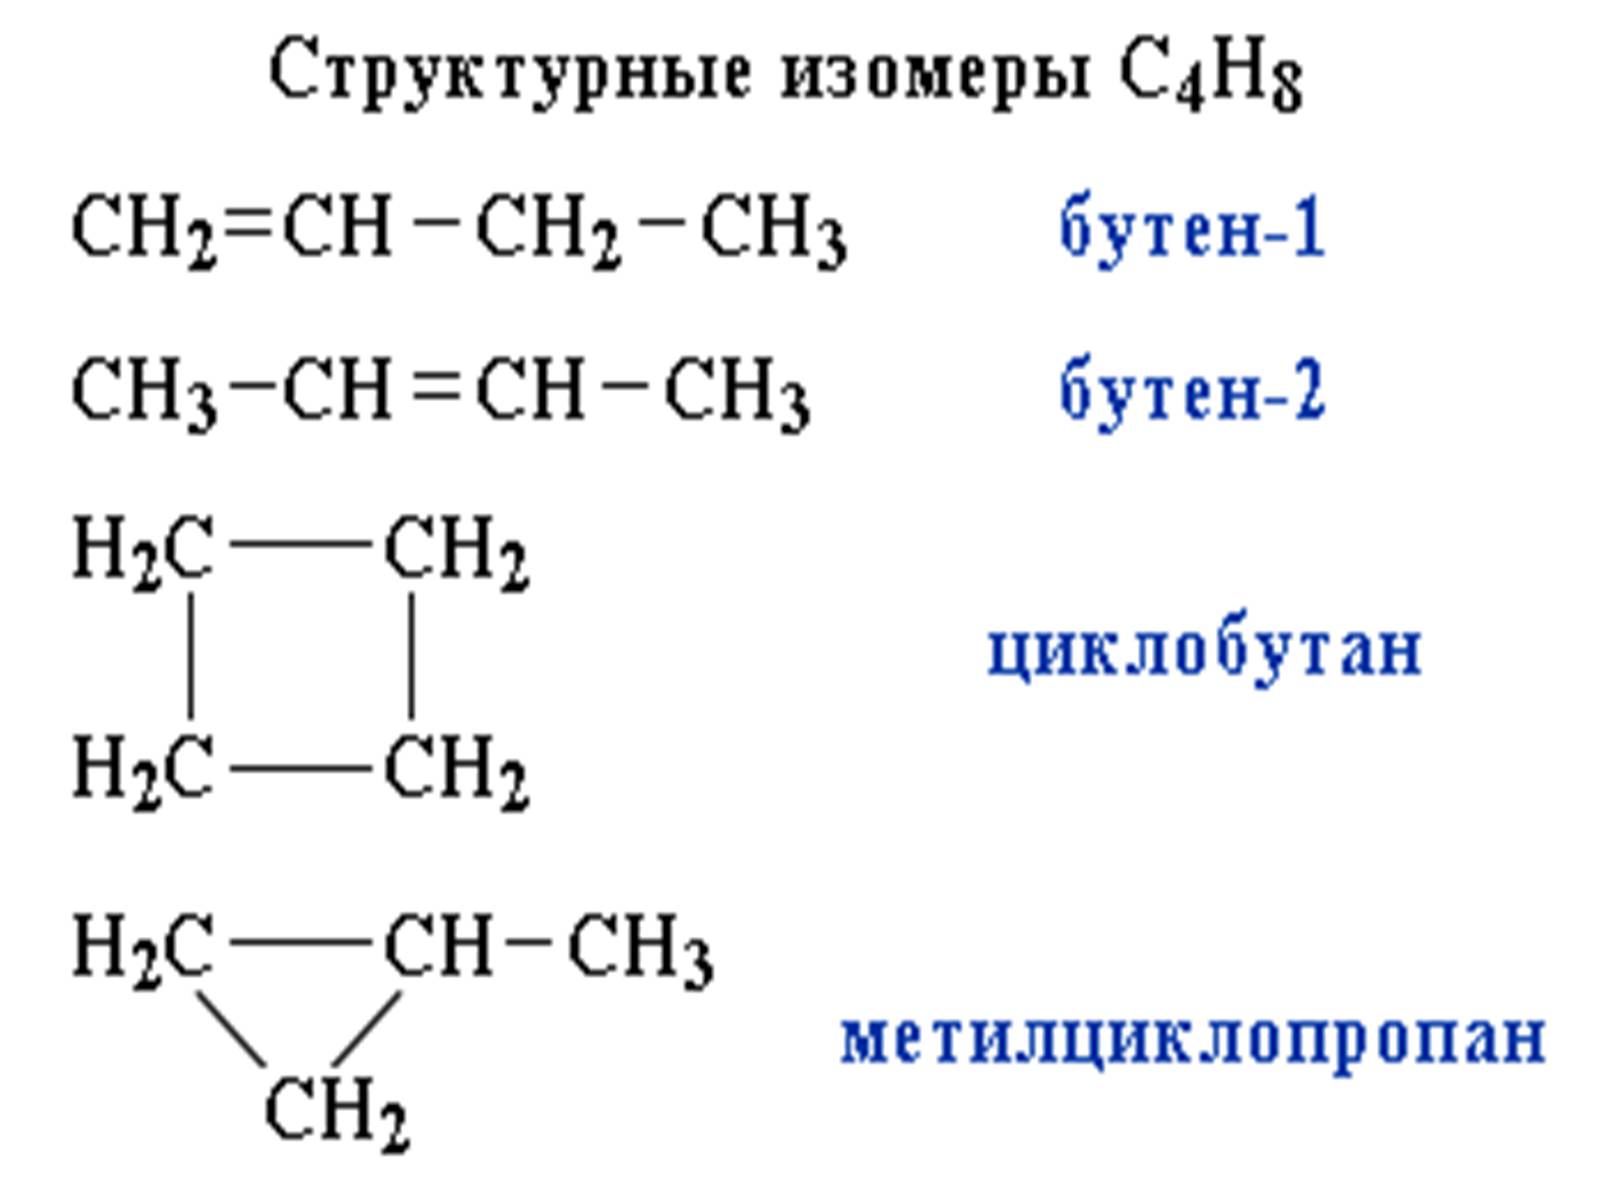 Ch3 ch3 класс группа органических соединений. Структурный изомер алкана. Структурные формулы соединений изомеров. Формулы соединений изомеров. Структурные формулы всех изомеров вещества с4н8.